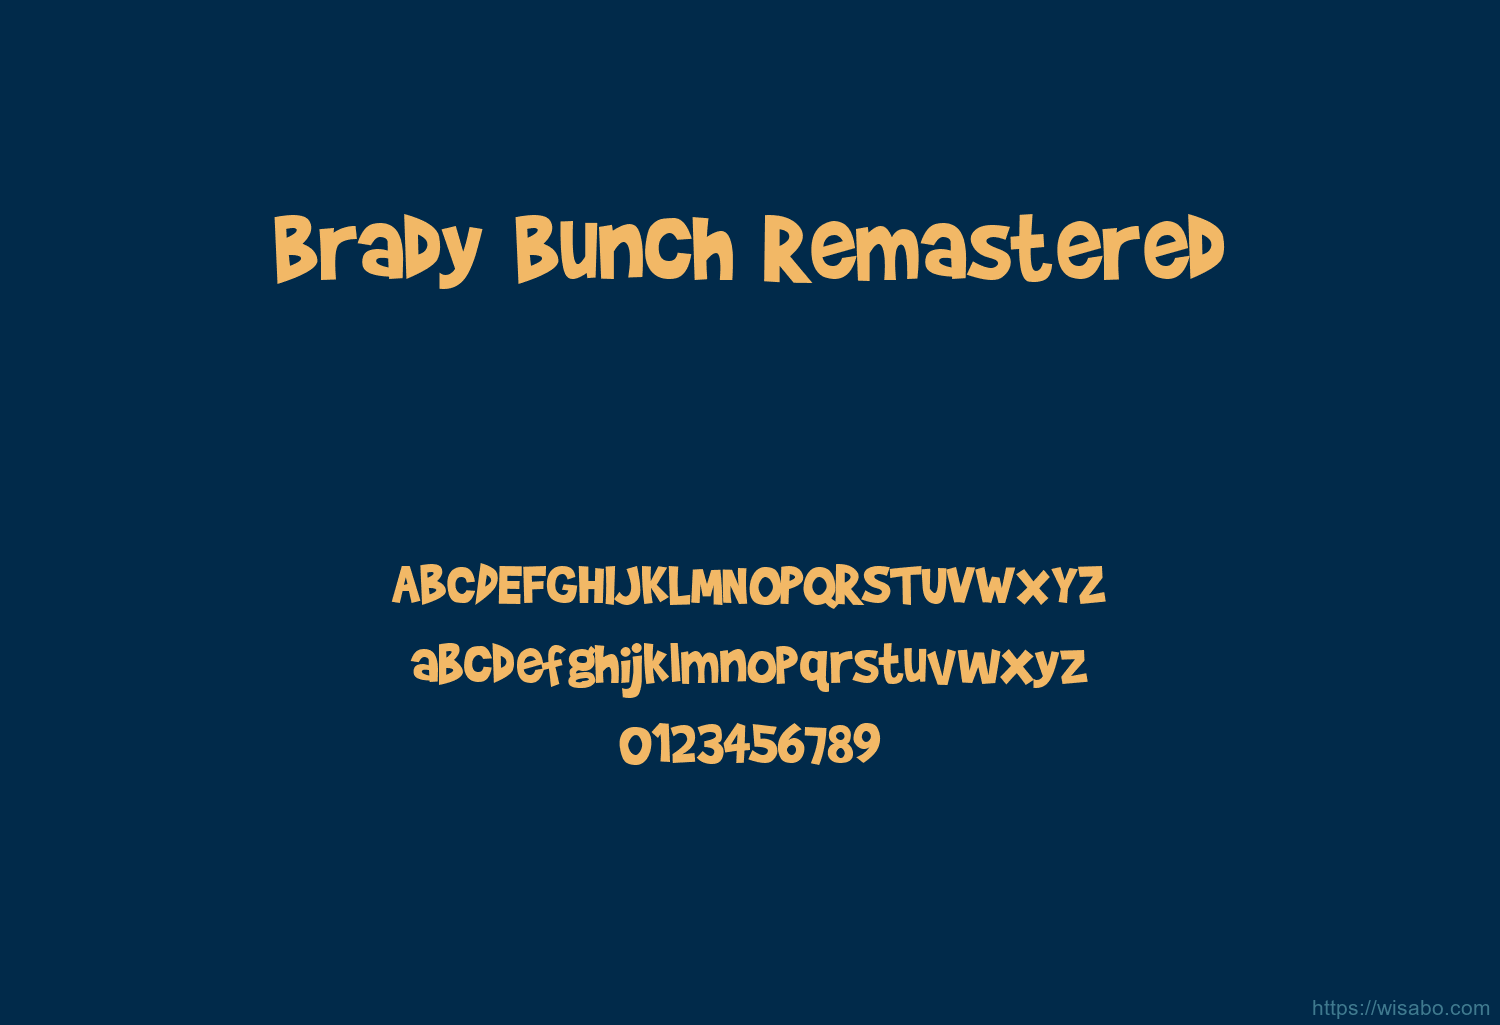 Brady Bunch Remastered